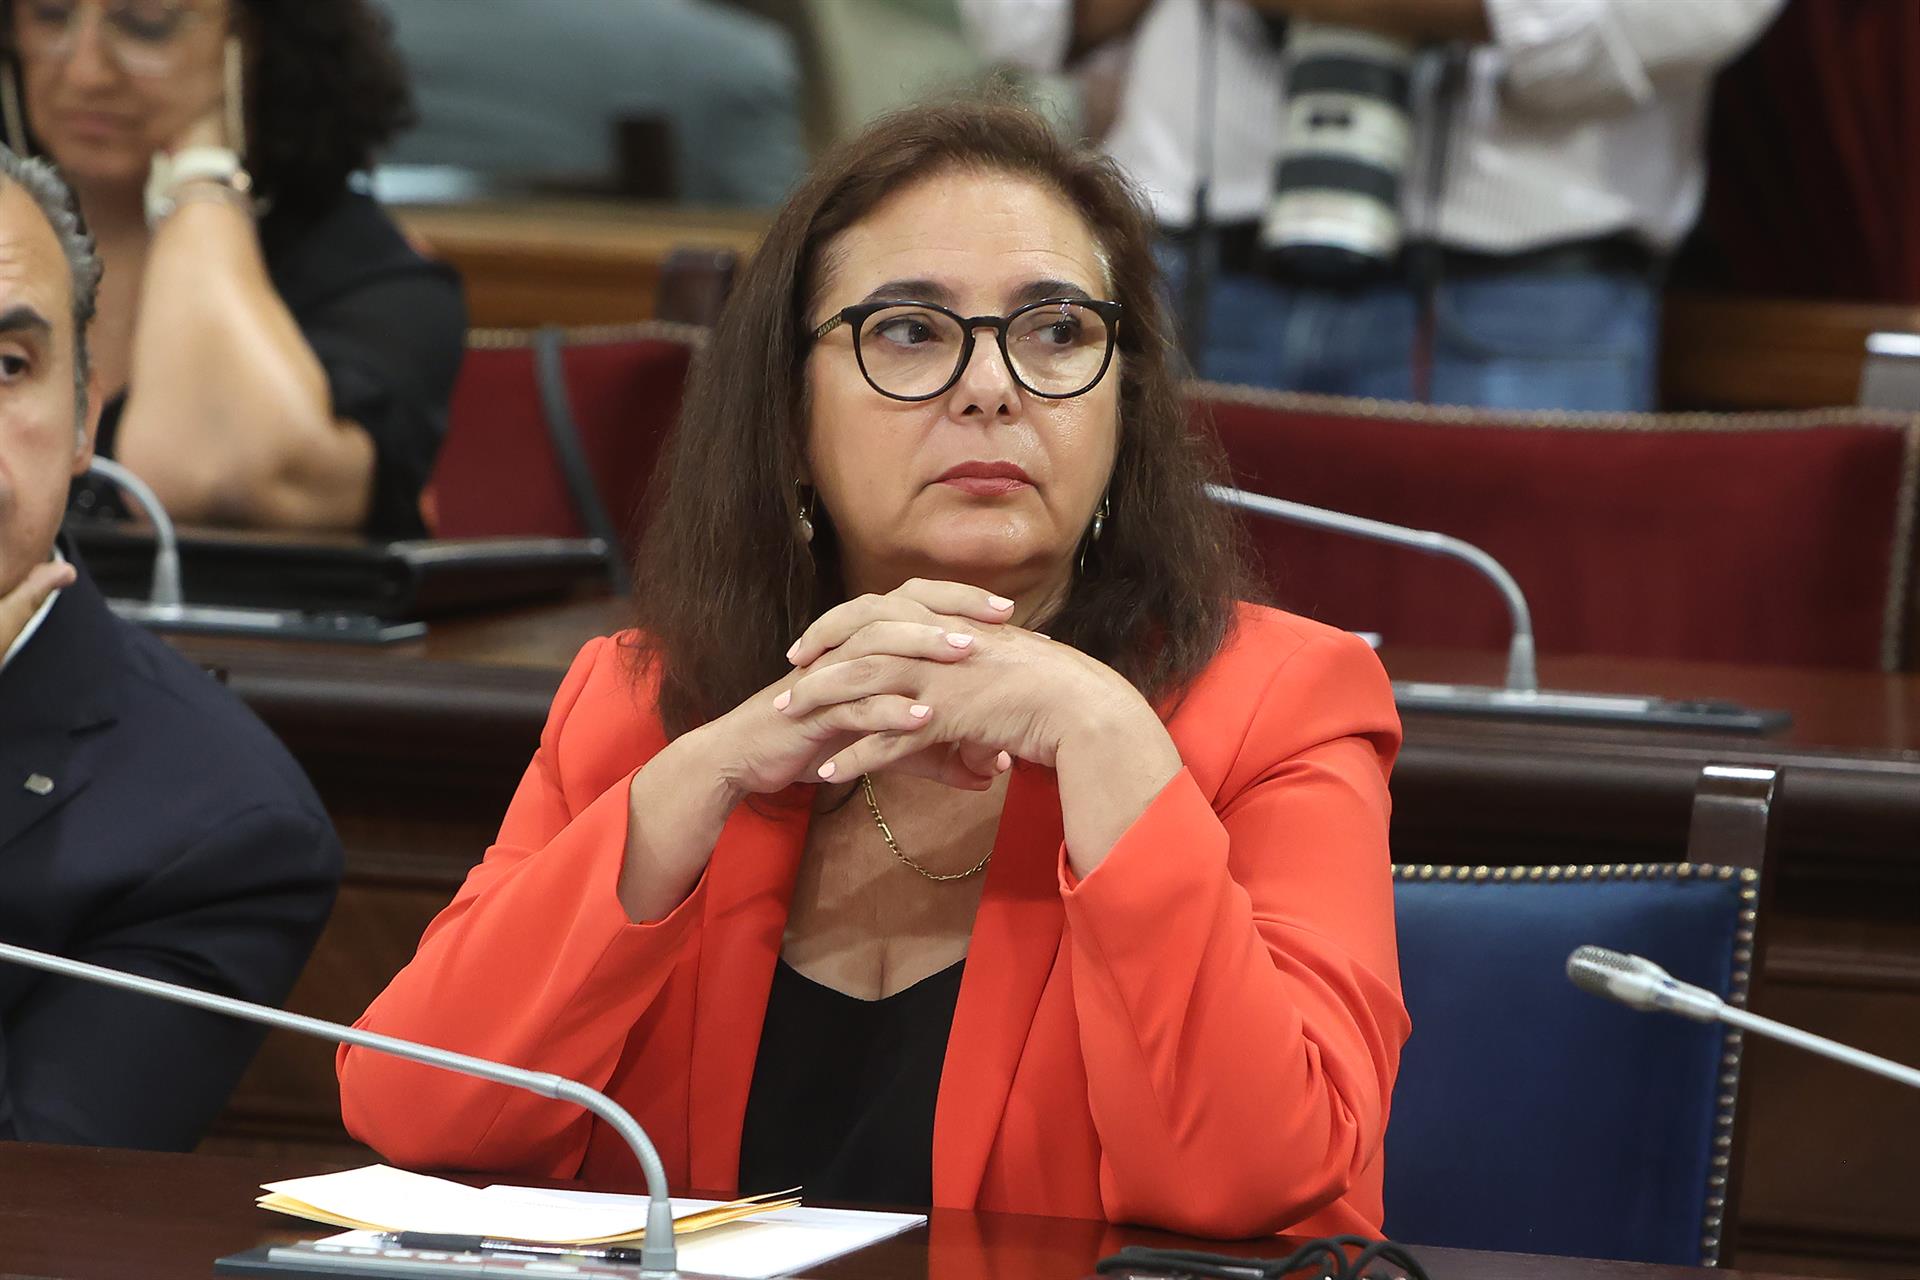 La consellera de Salud, Manuela García durante una sesión de control en el Parlament balear.